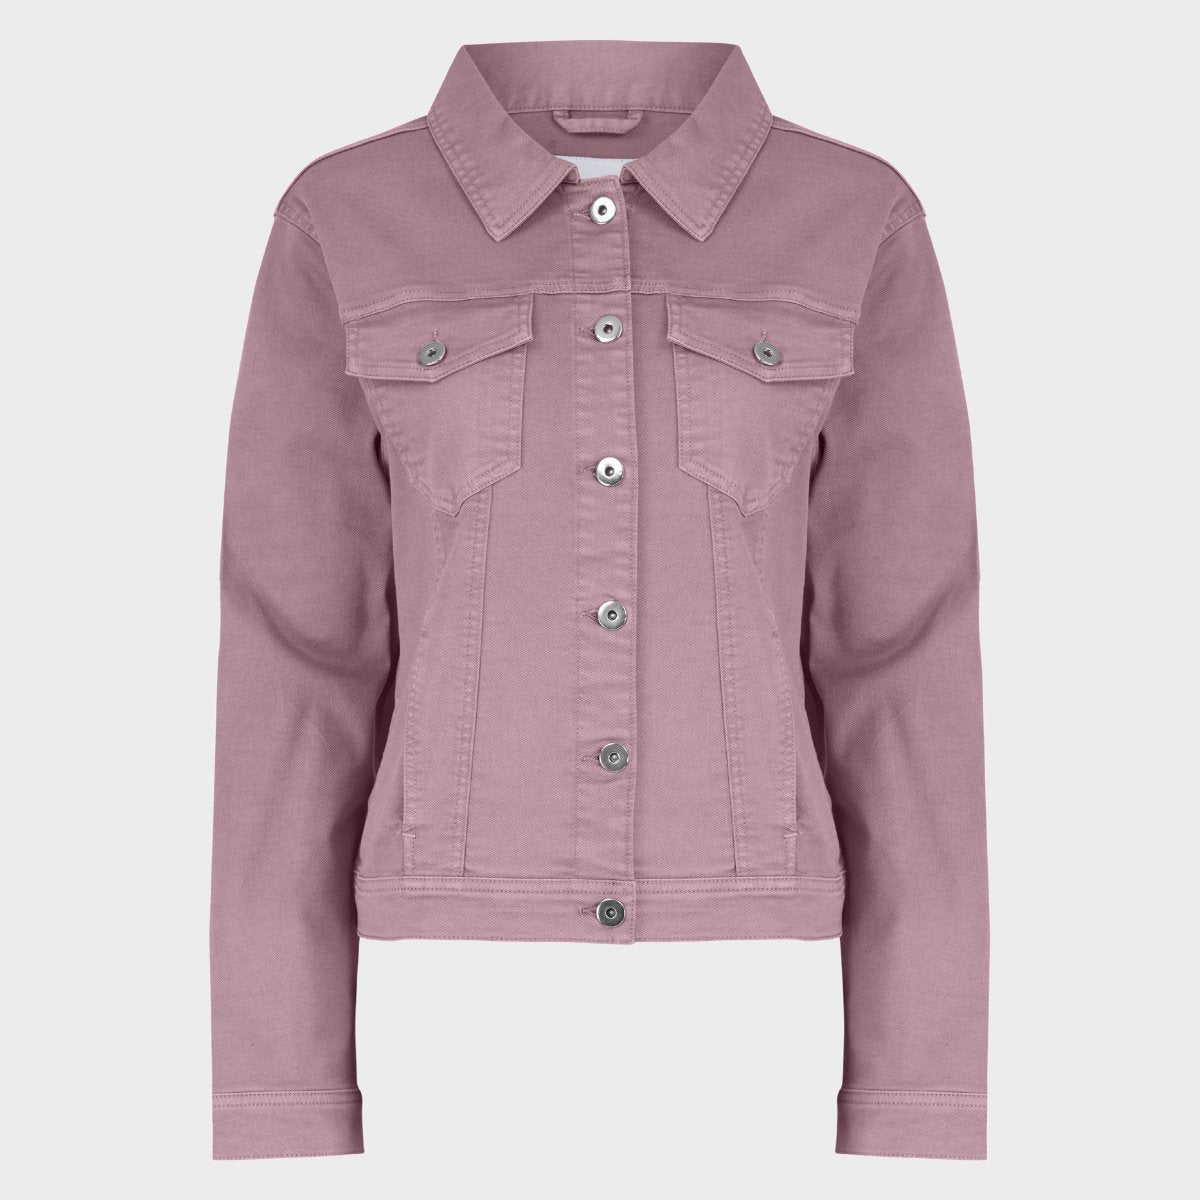 Ladies Stretch Denim Jacket | denim jackets – You Know Who's